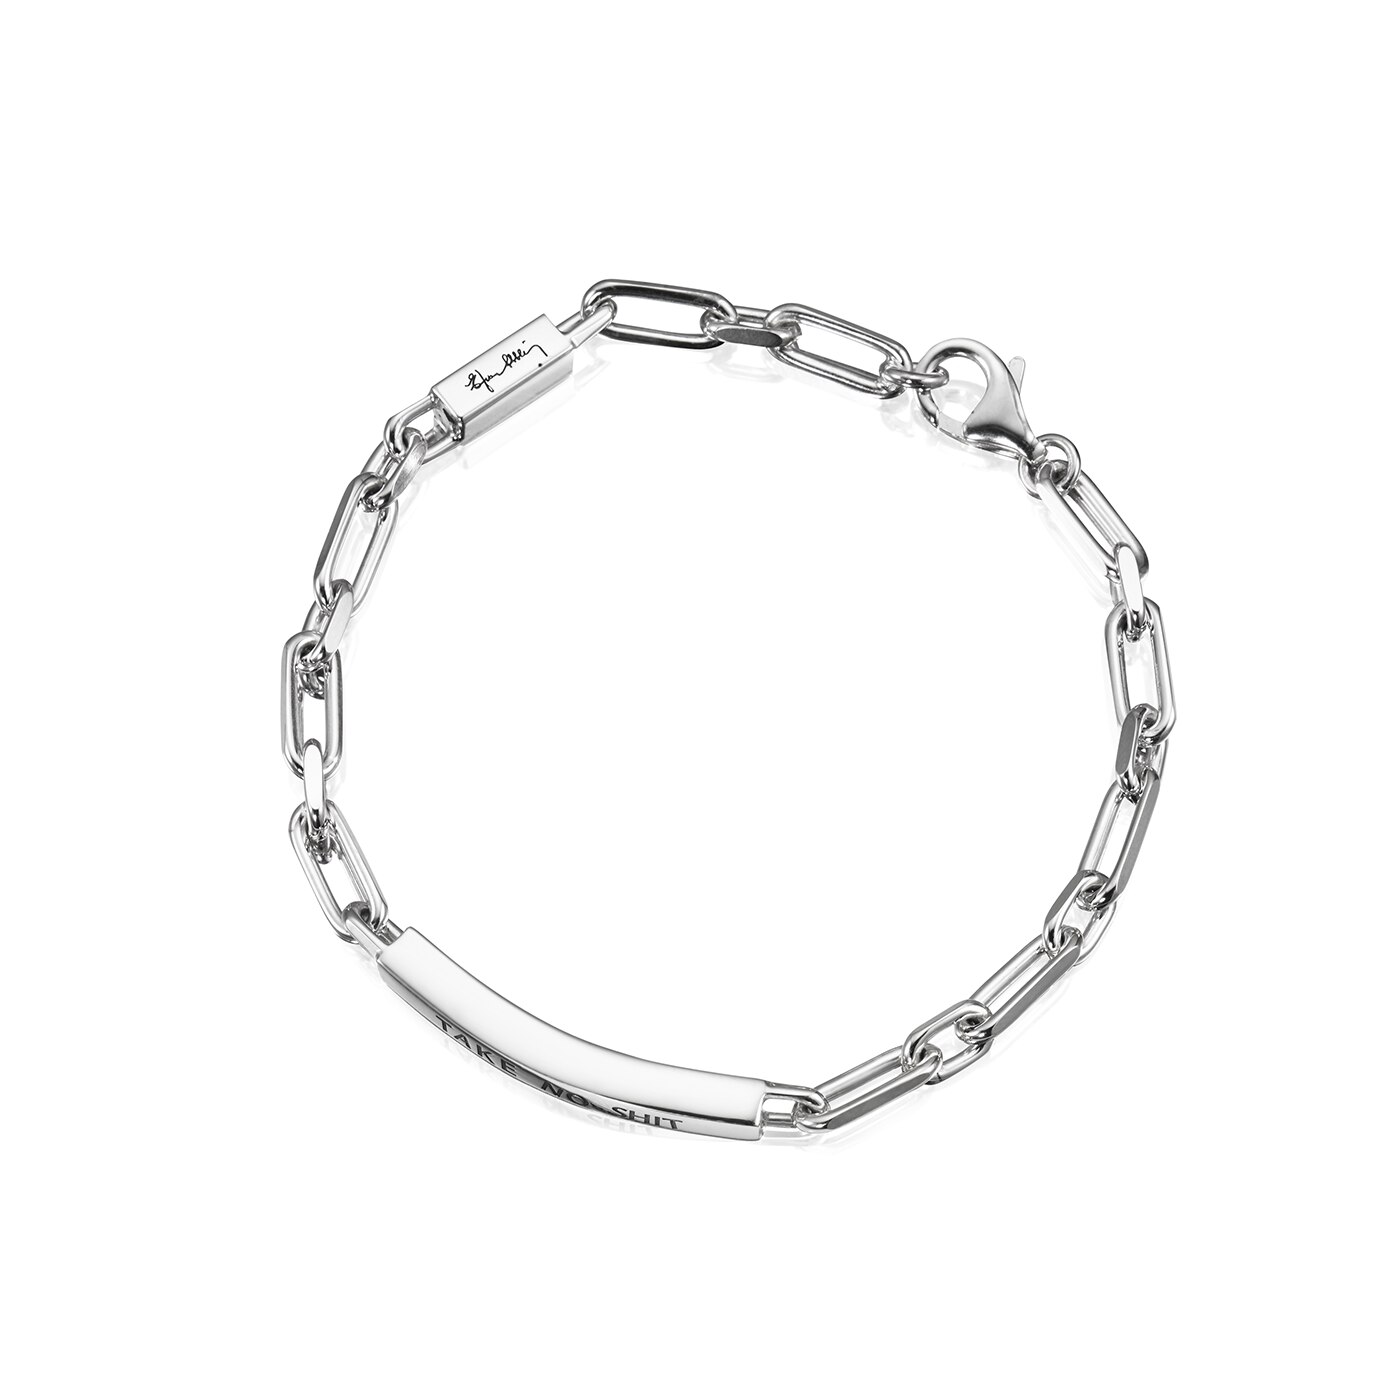 Thin Silver Bracelet - Take No Shit